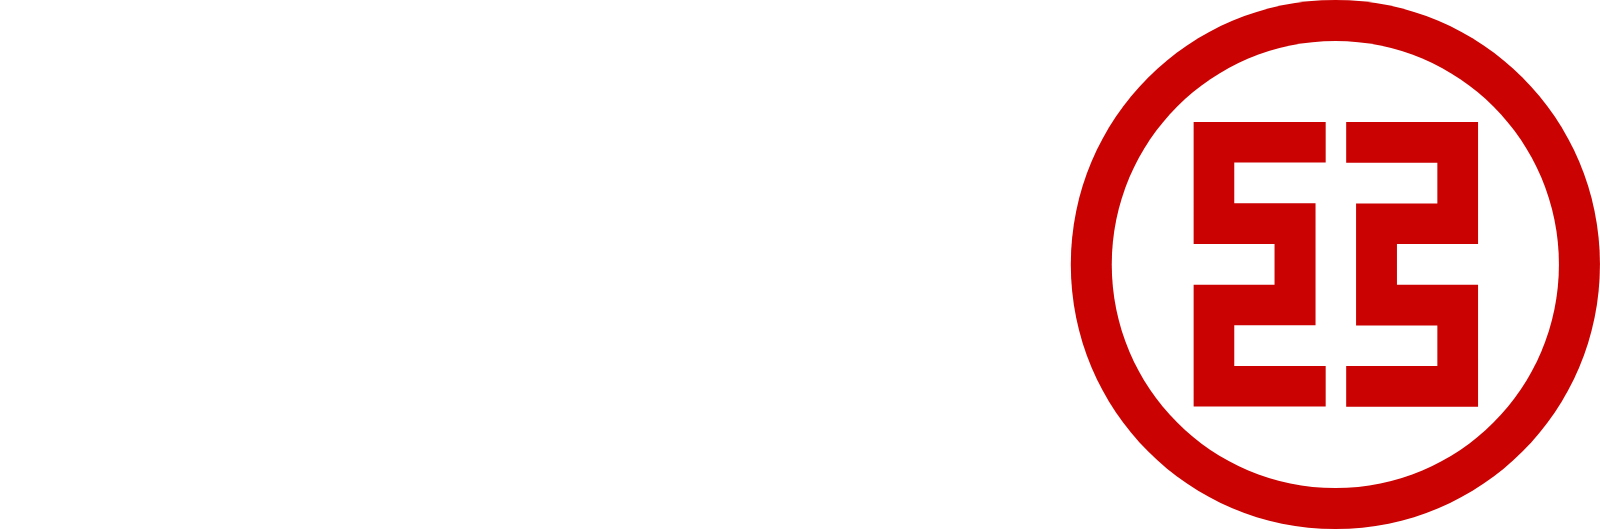 ICBC logo grand pour les fonds sombres (PNG transparent)